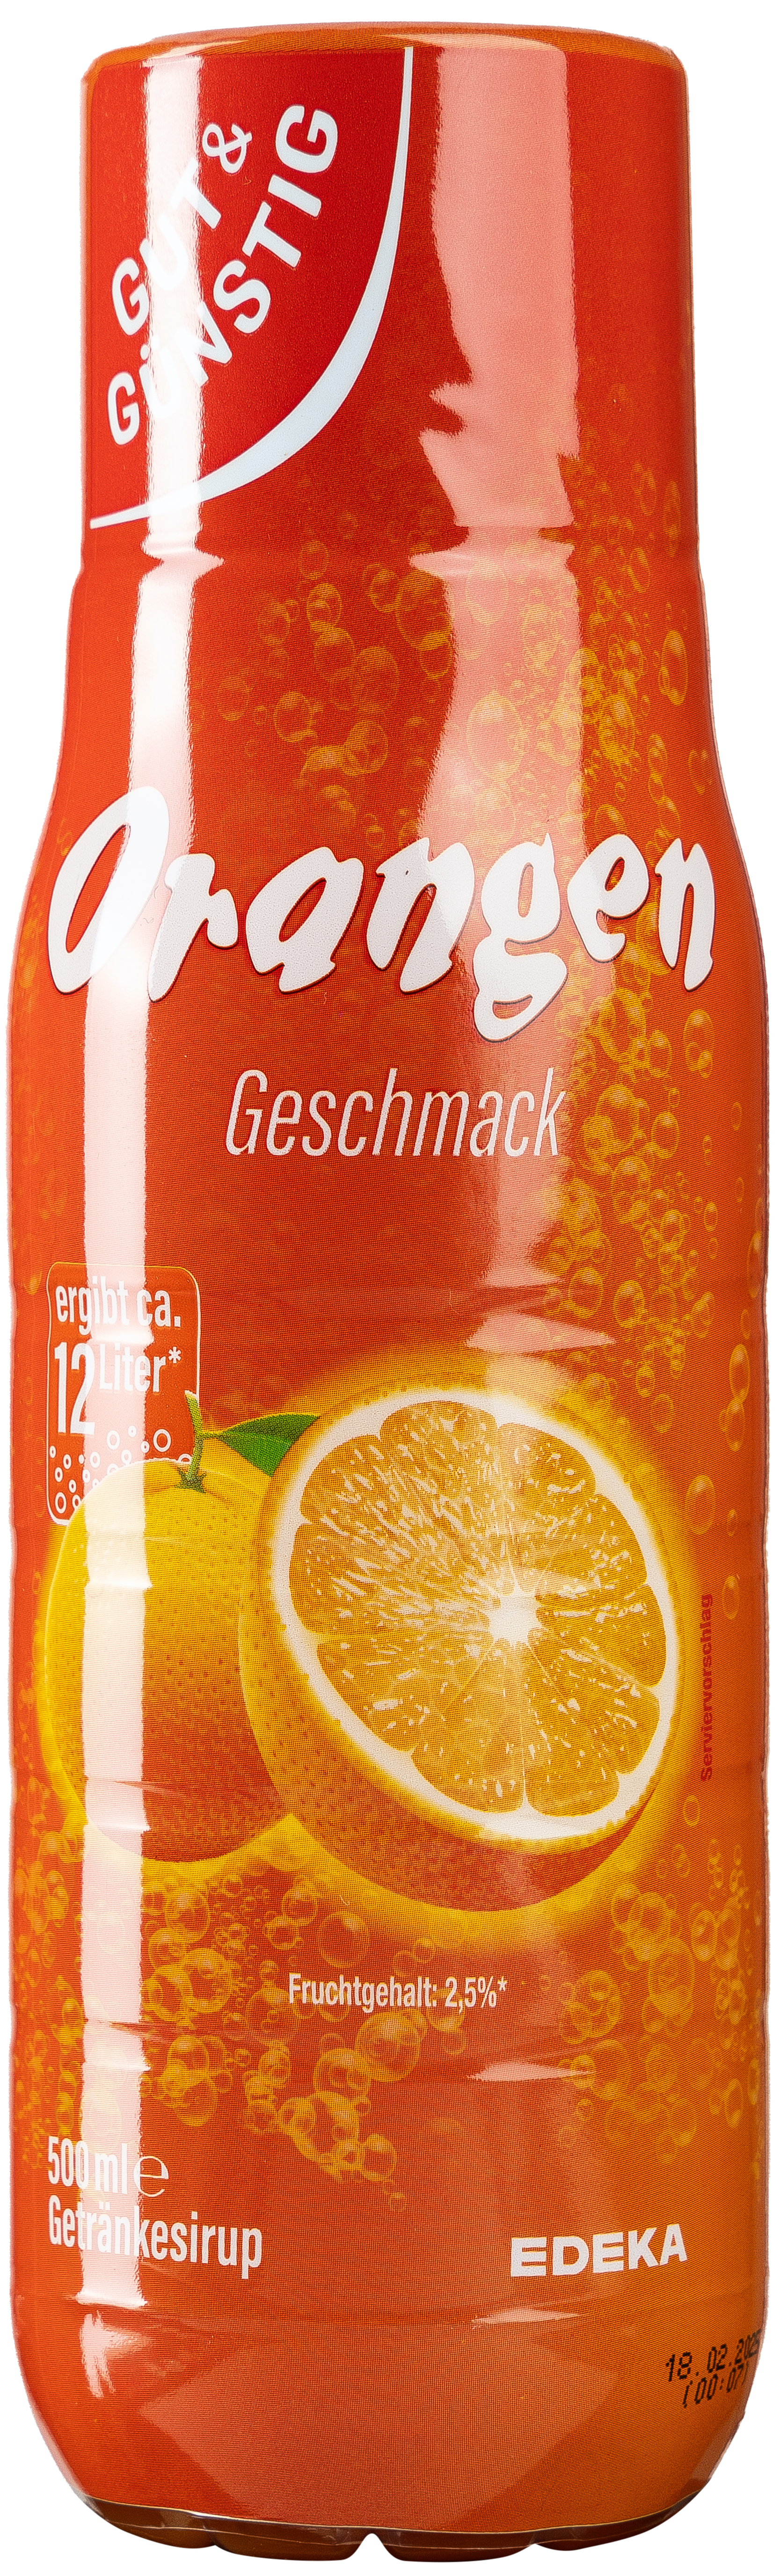 G&G Orange Sirup 0,5L